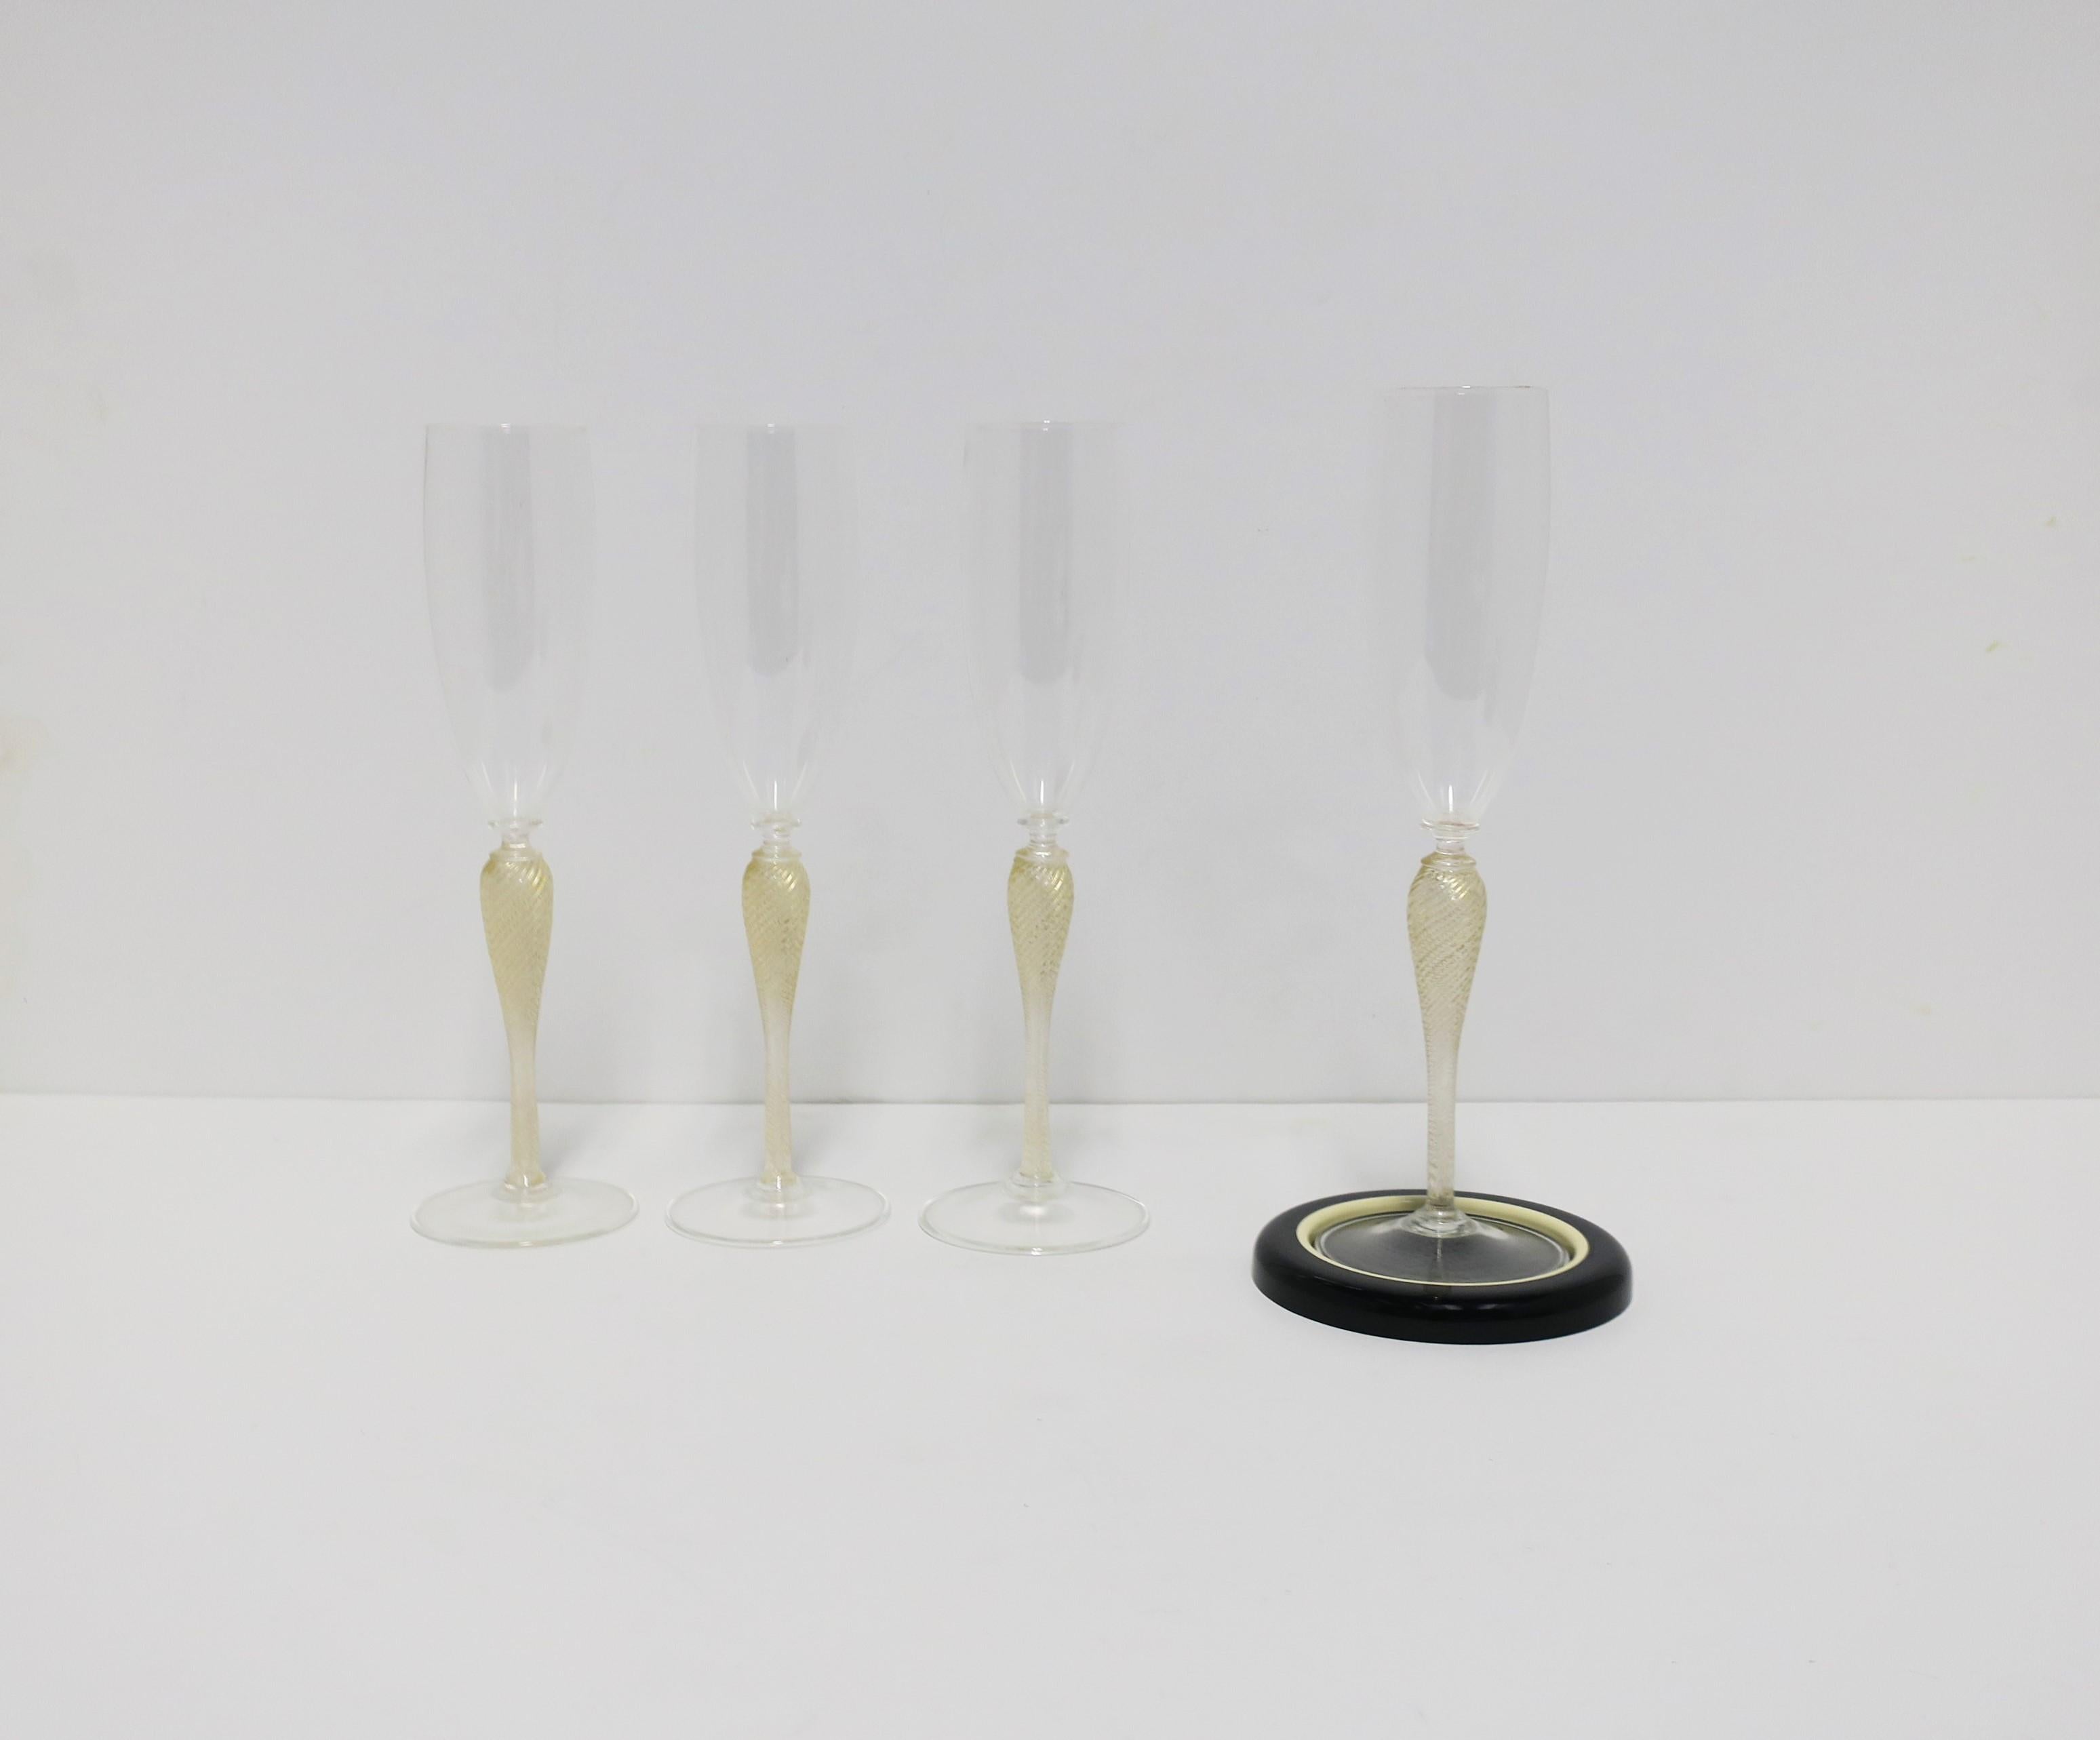 Art Glass Italian Venetian Murano Gold Champagne Flute Glasses, Set of 4